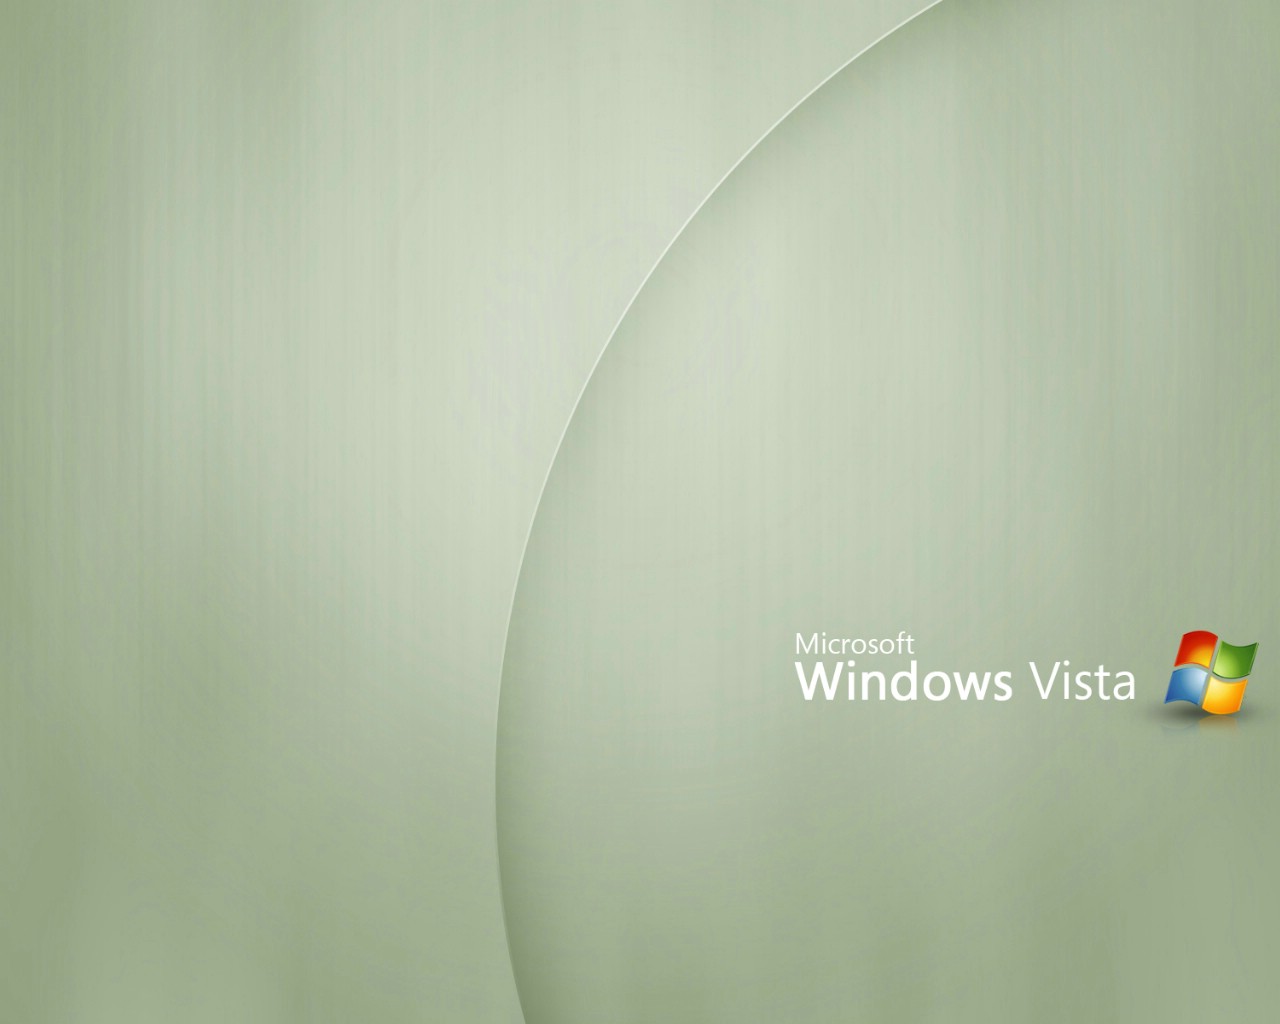 壁纸1280x1024Windows Vista壁纸 壁纸20壁纸 Windows Vista壁纸壁纸 Windows Vista壁纸图片 Windows Vista壁纸素材 系统壁纸 系统图库 系统图片素材桌面壁纸